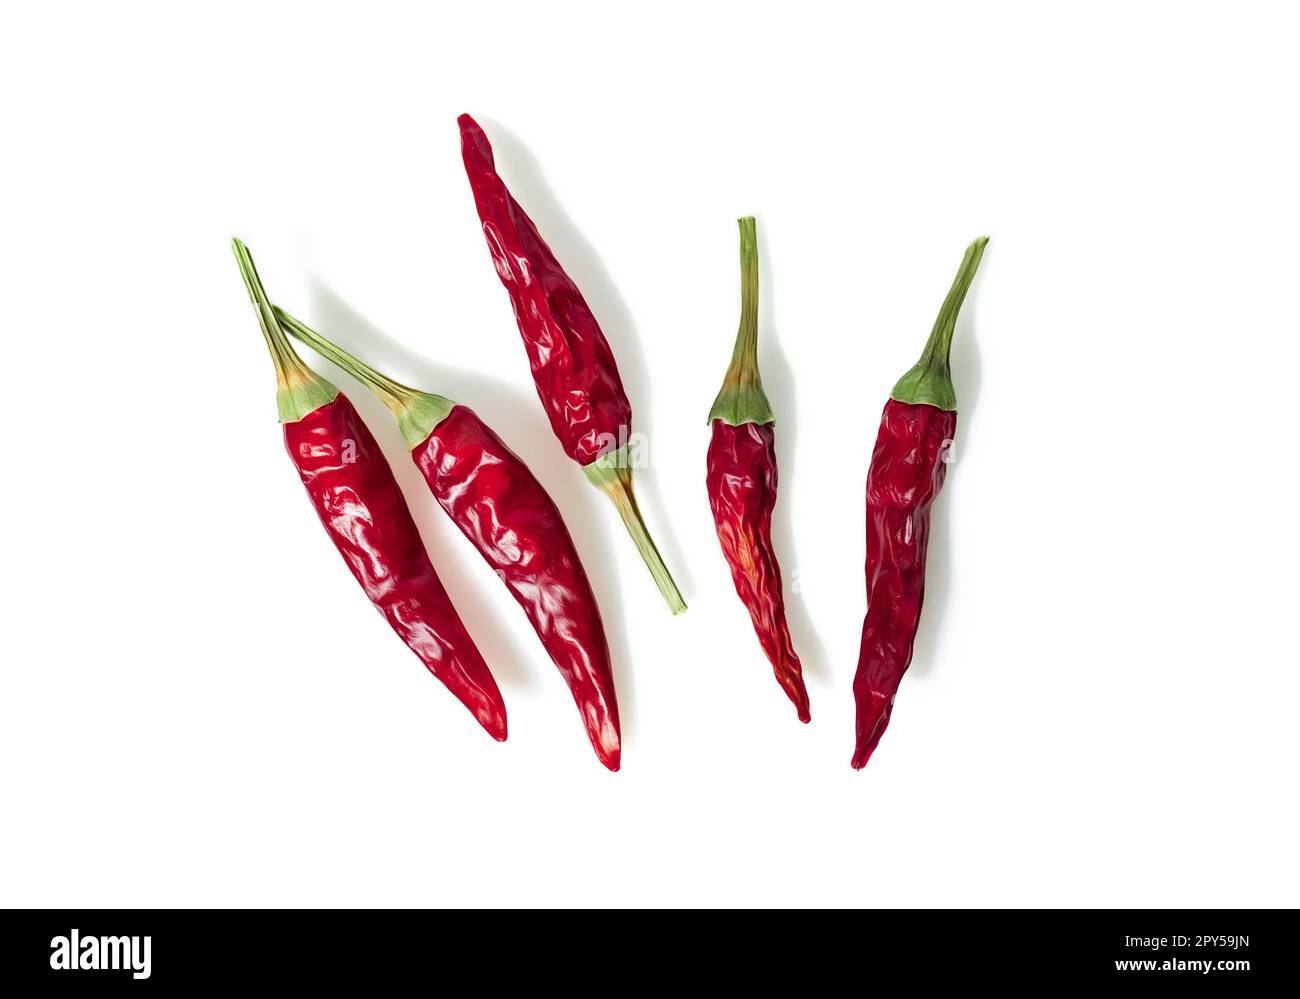 Rote Paprika oder Chili cayenne pfeffer auf weißem Hintergrund Ausschnitt isoliert Getrocknet Stockfoto